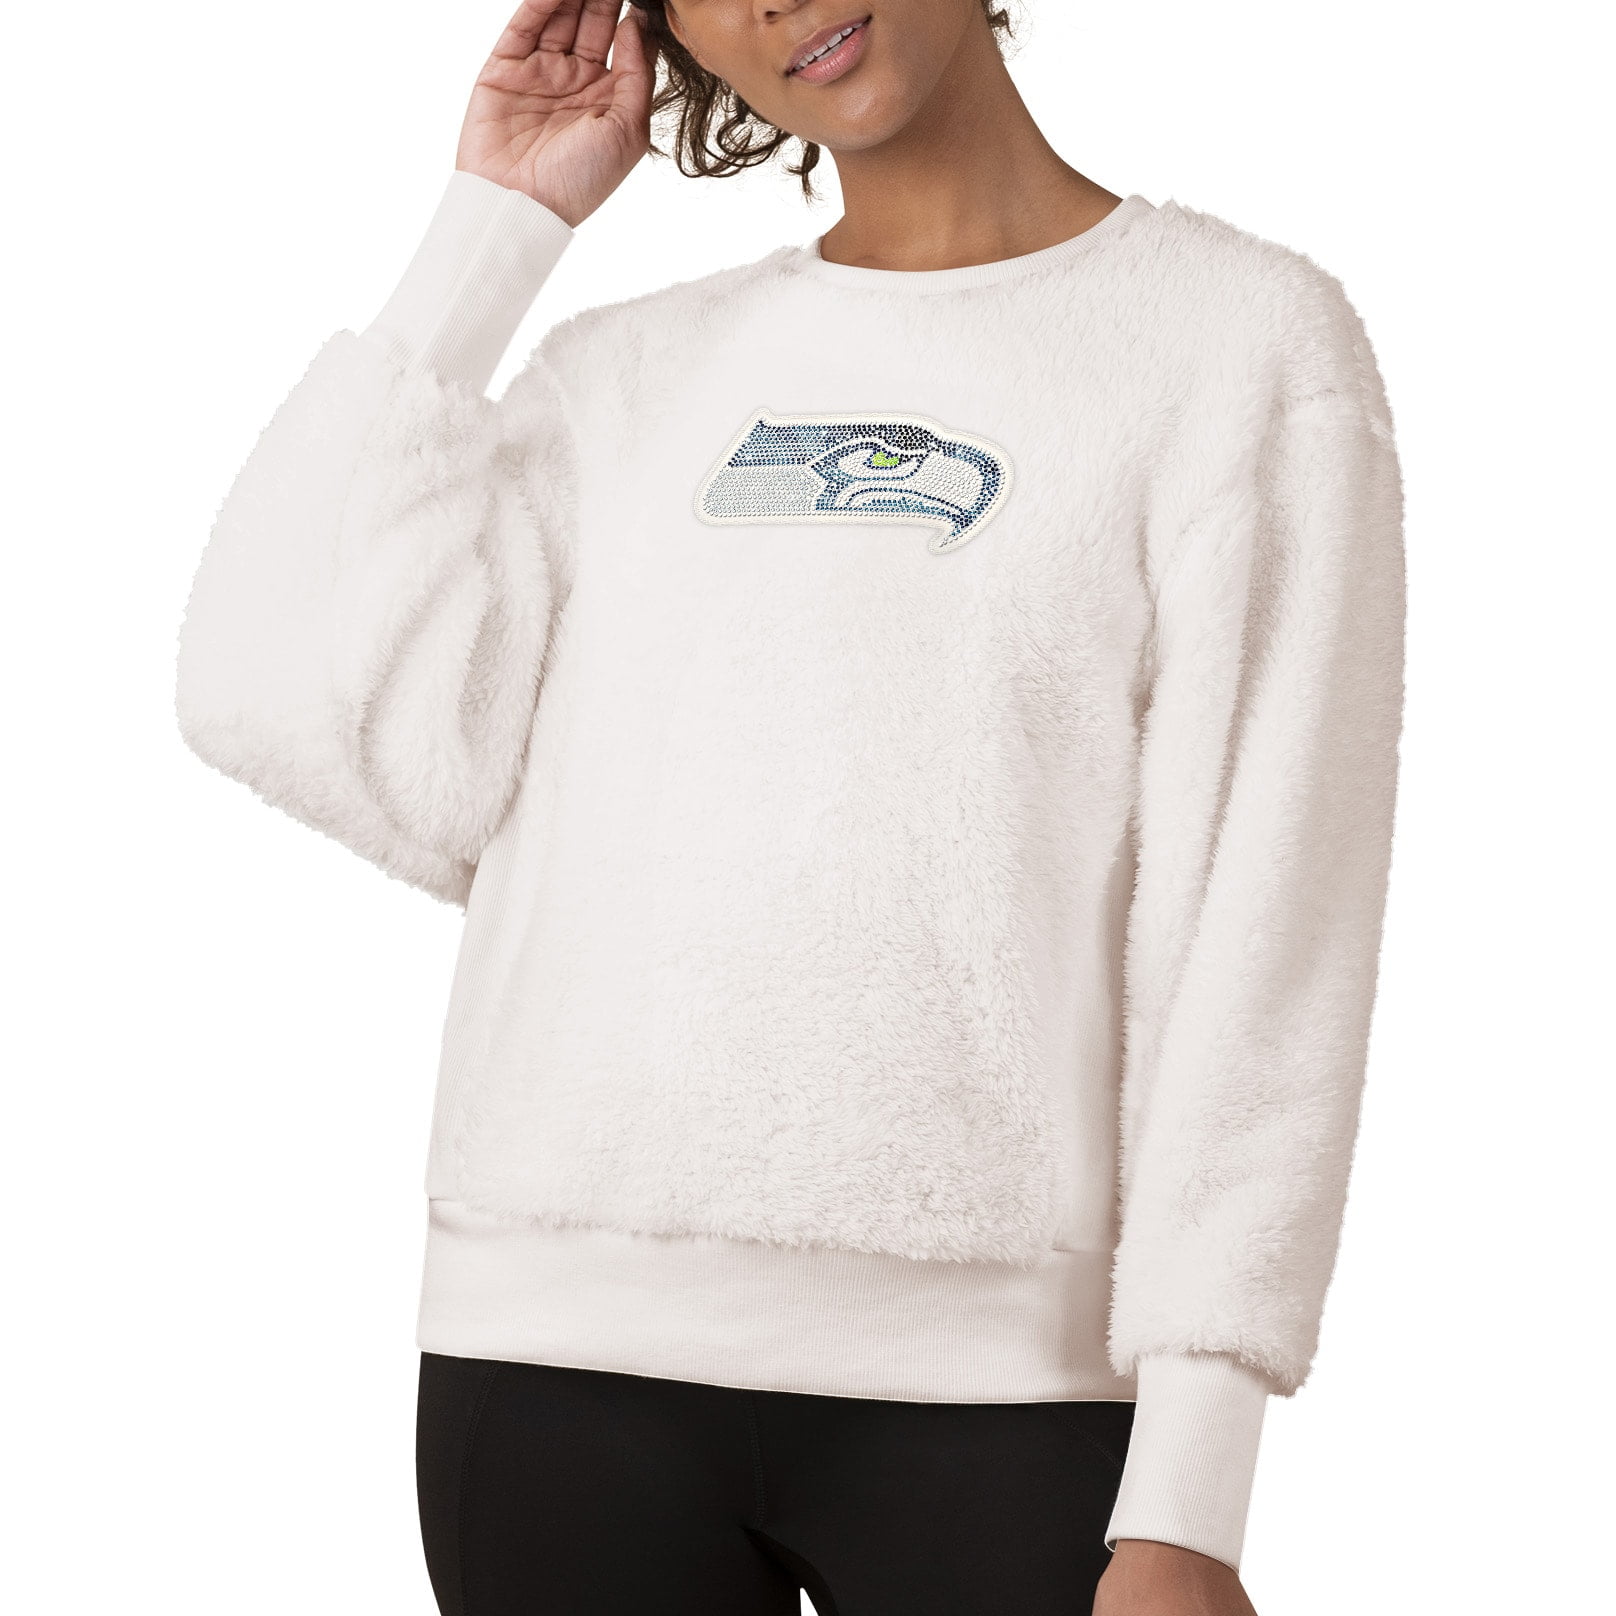 seahawks embroidered sweatshirt